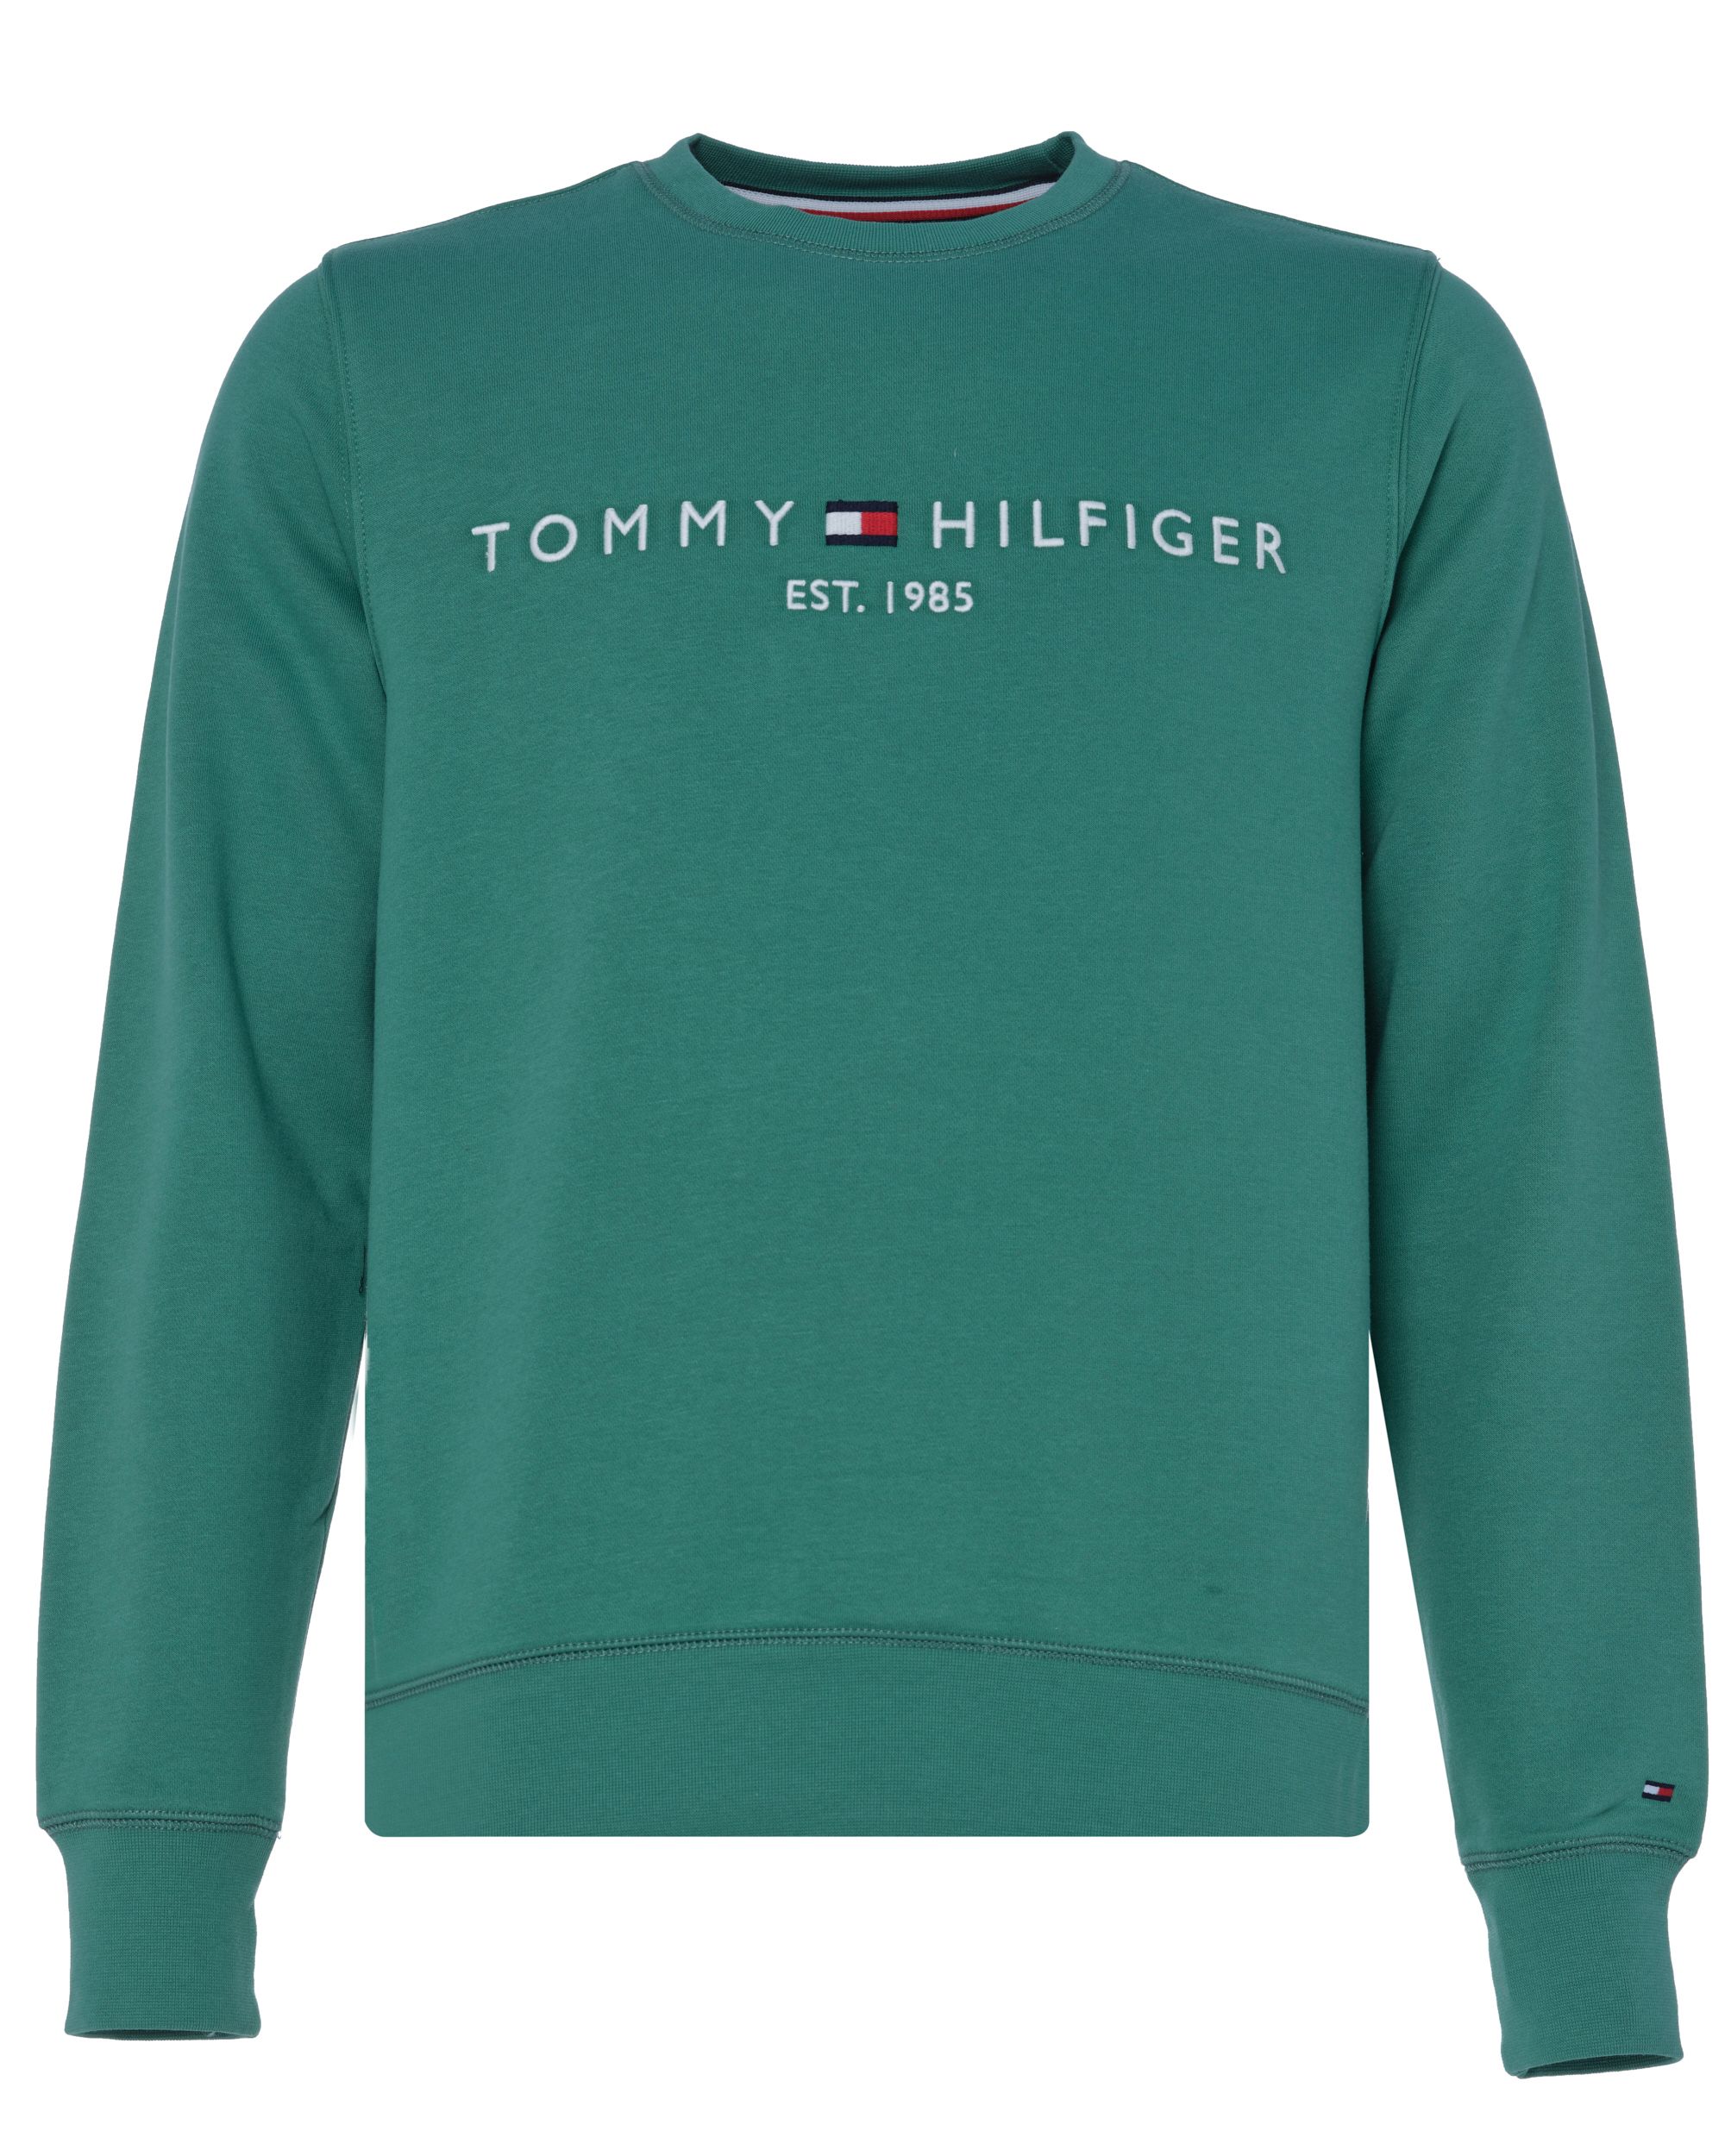 Tommy Hilfiger Menswear Sweater Groen 081214-001-L